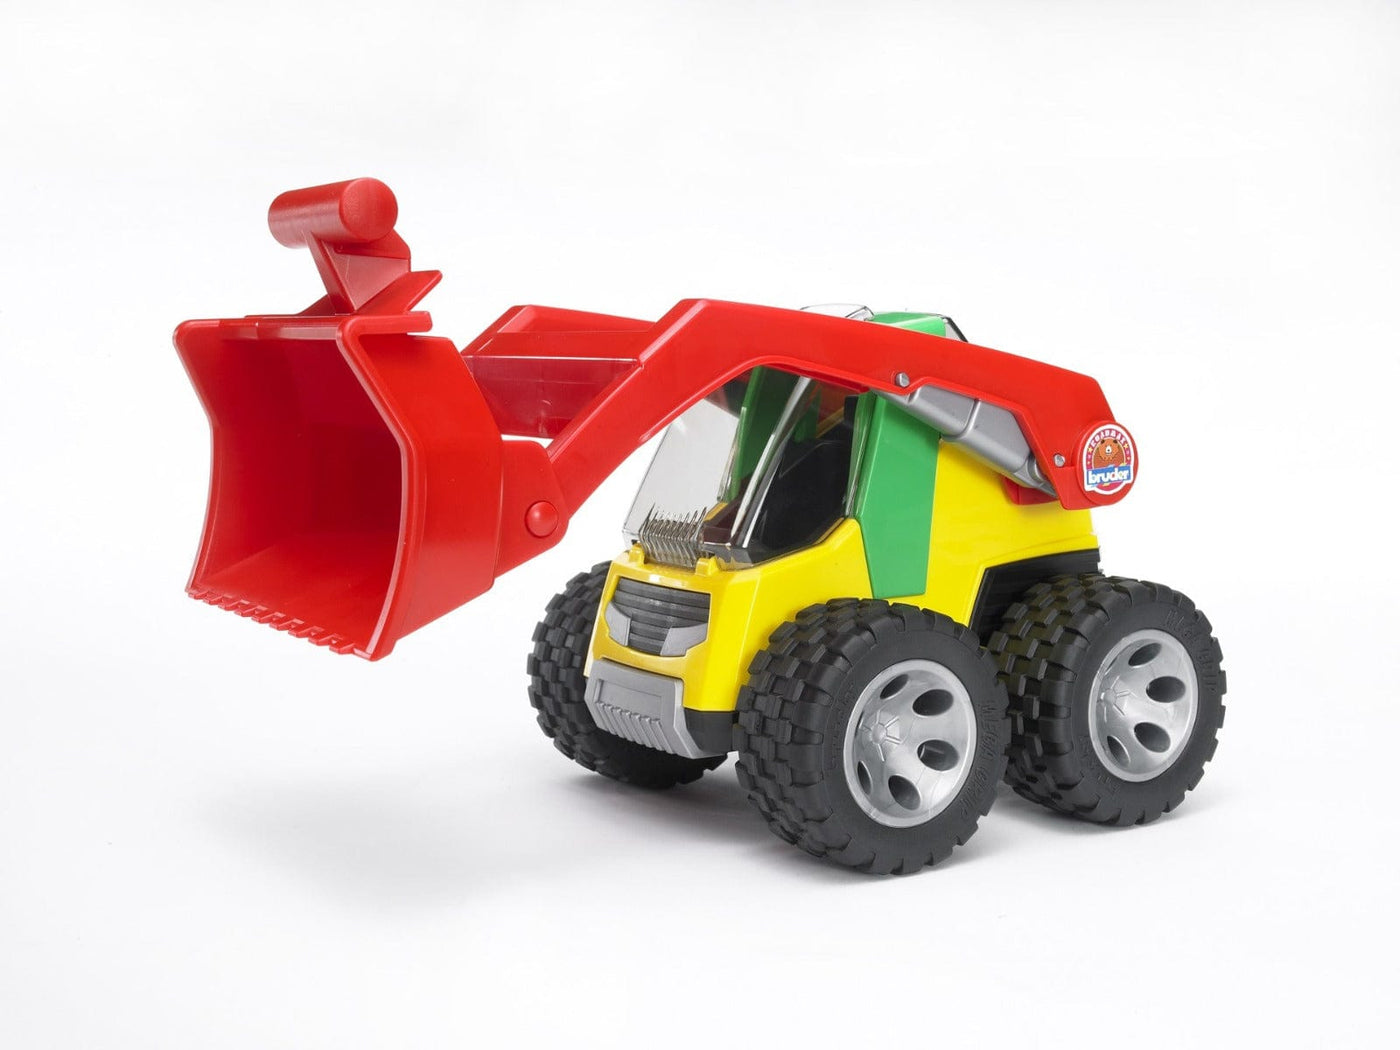 Bruder Toy Garages & Vehicles Bruder ROADMAX Skid Steer loader